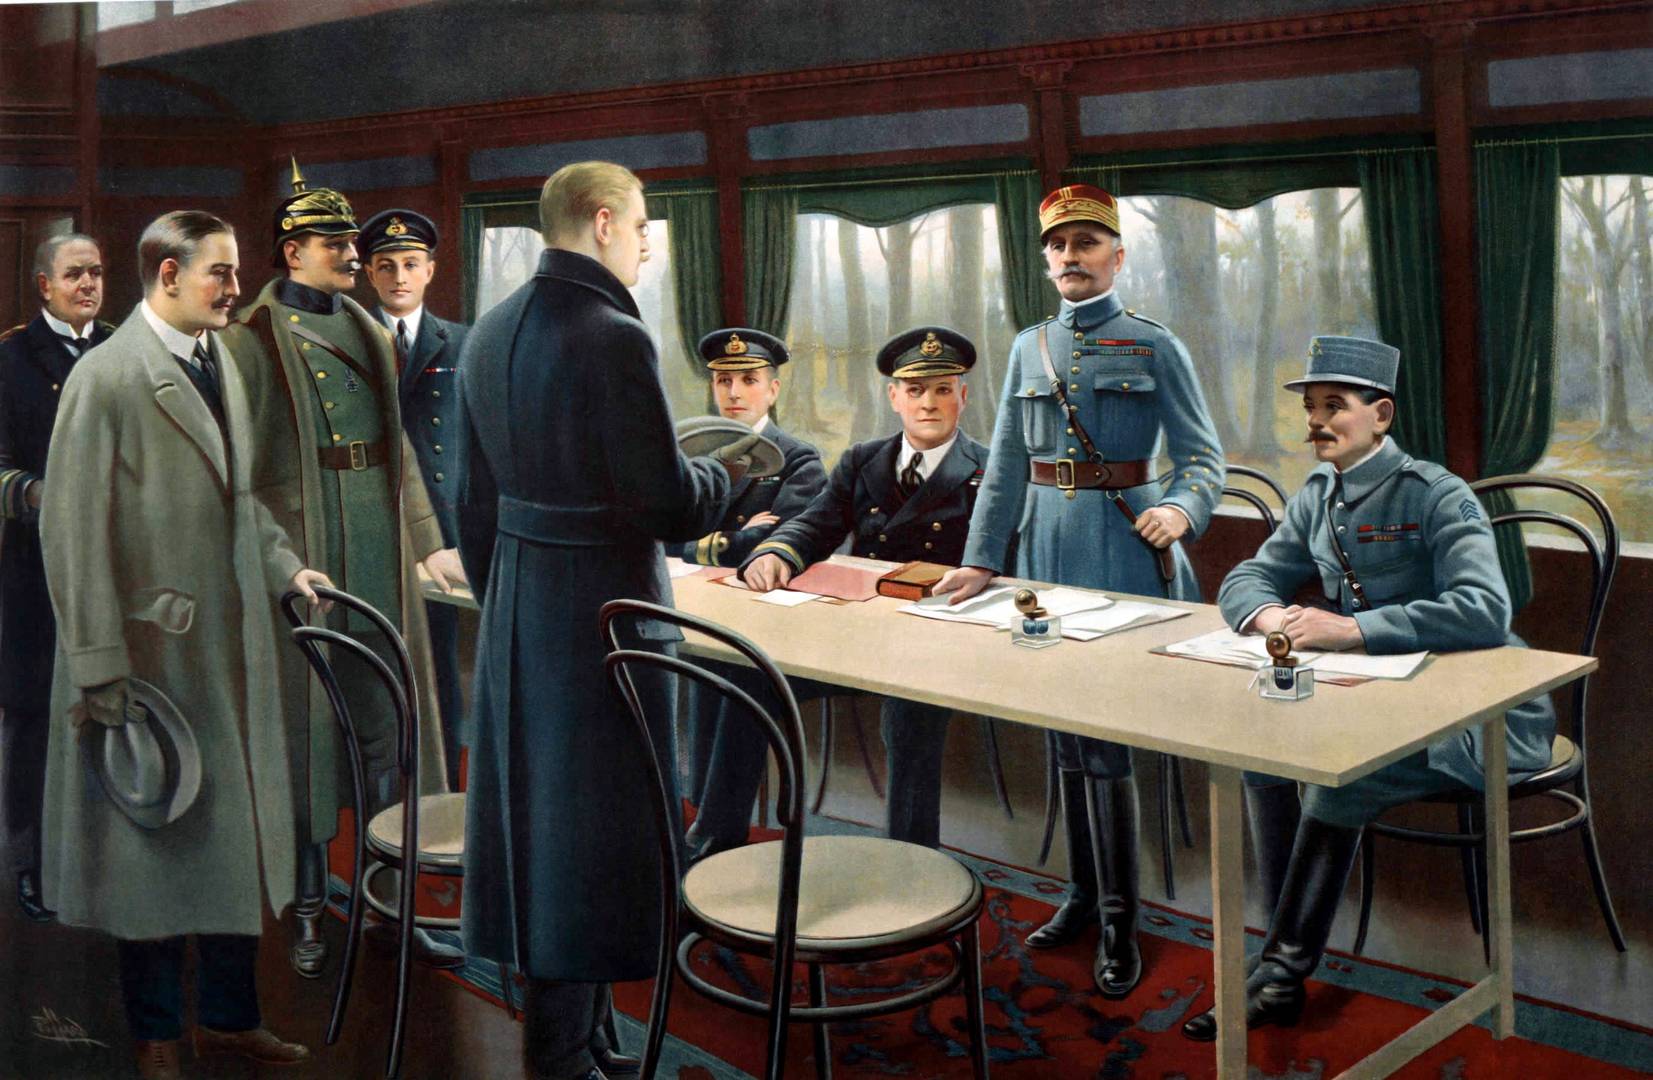 Соглашения о перемирии 11 ноября 1918 года в железнодорожном салоне в Компьенском лесу